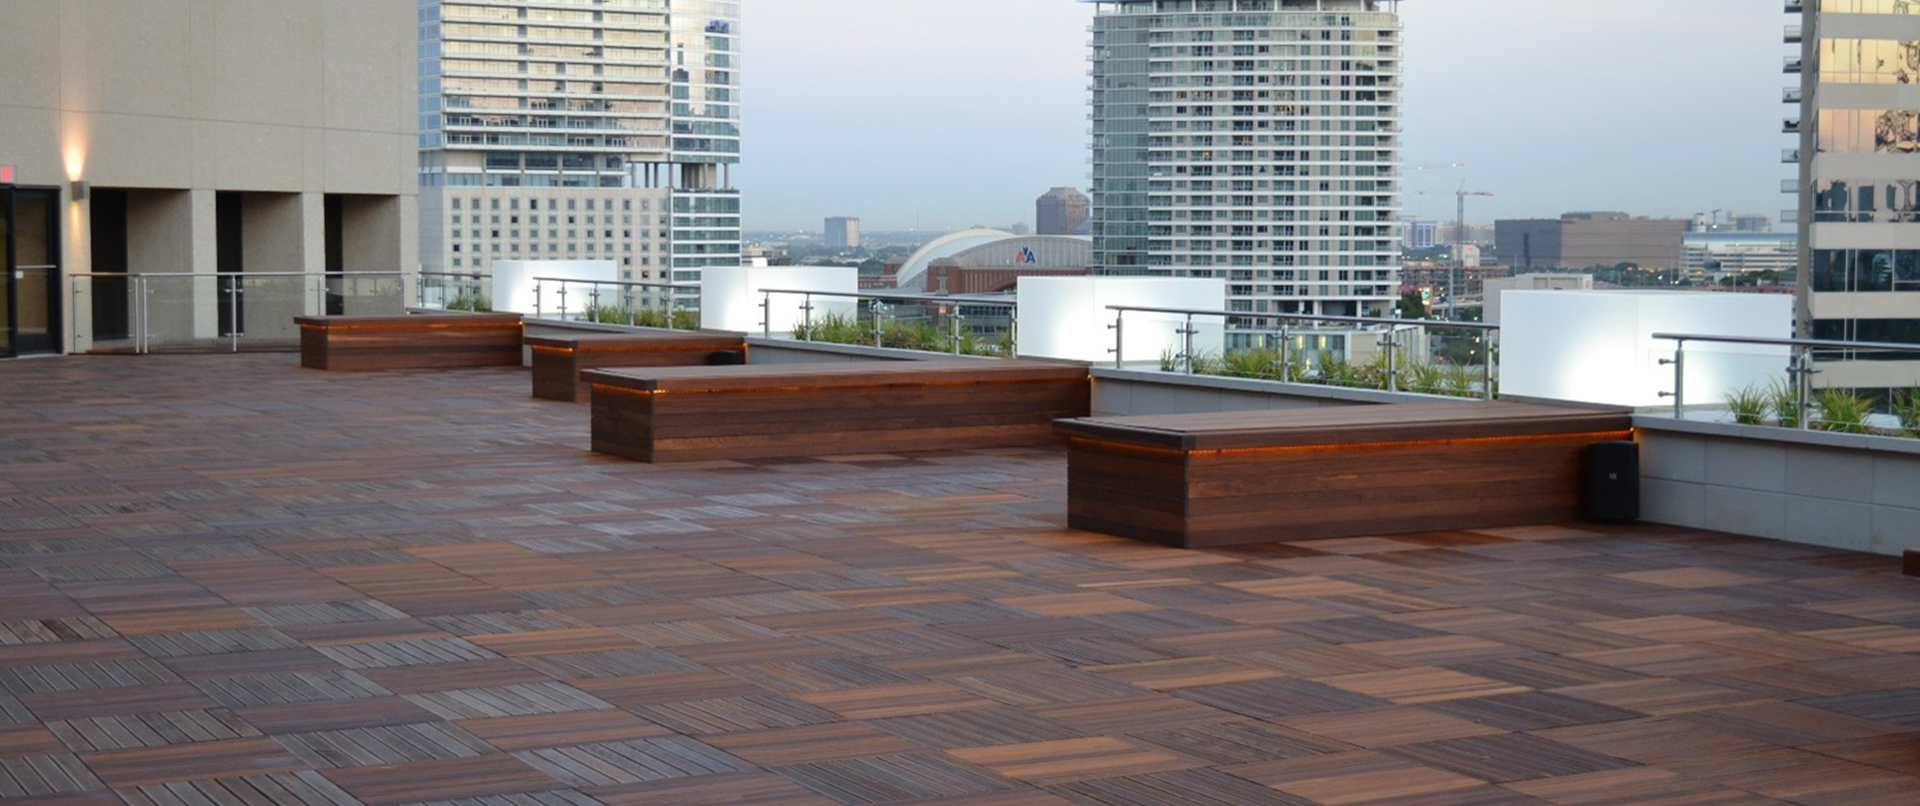 Spacious Rooftop Wood Tile Deck